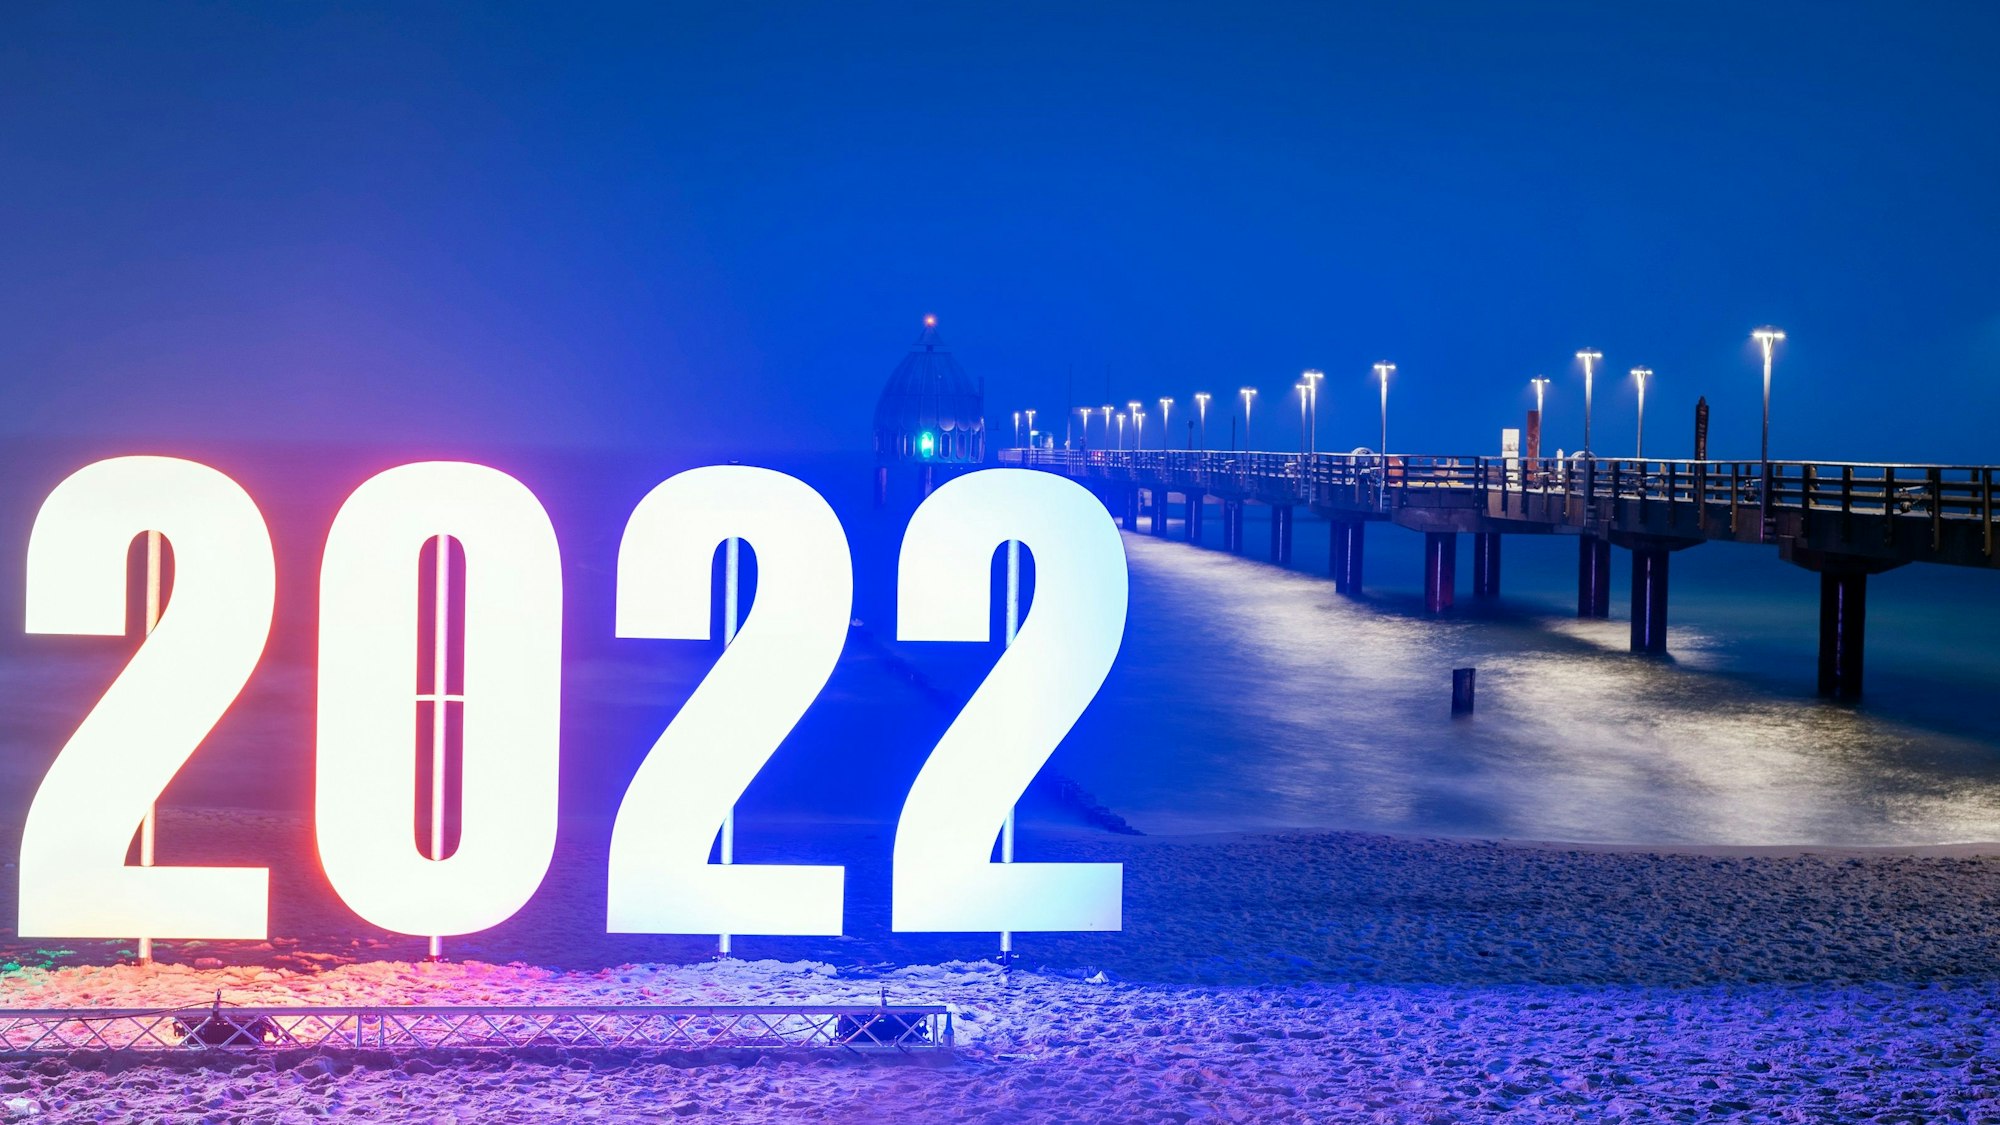 Das Ostseebad Zingst grüßt seine Gäste am Neujahrsmorgen mit der Jahreszahl 2022.